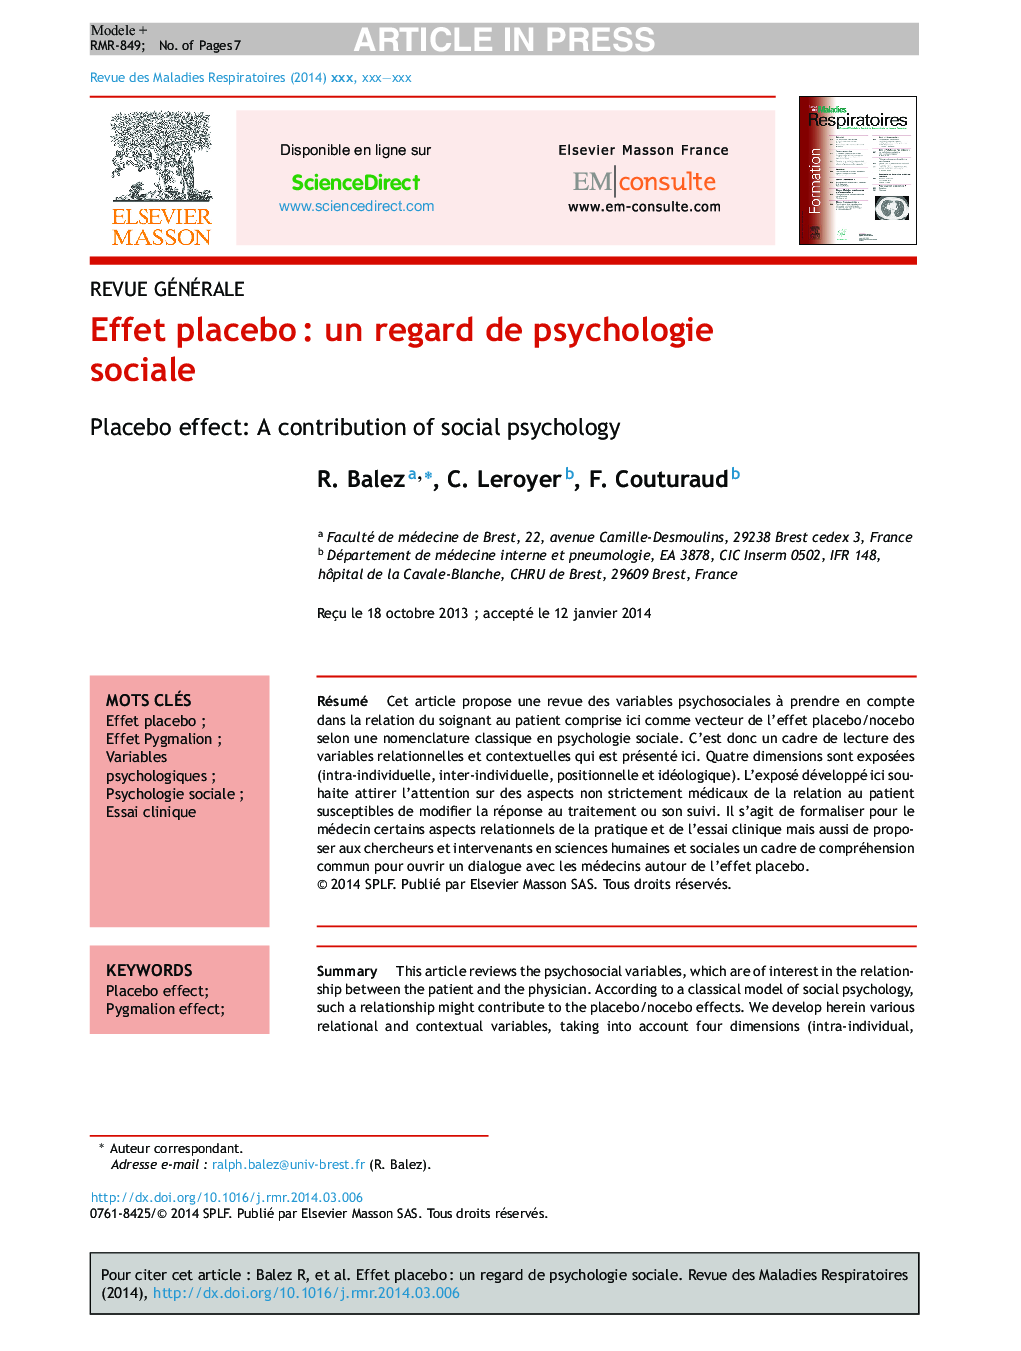 Effet placeboÂ : un regard de psychologie sociale